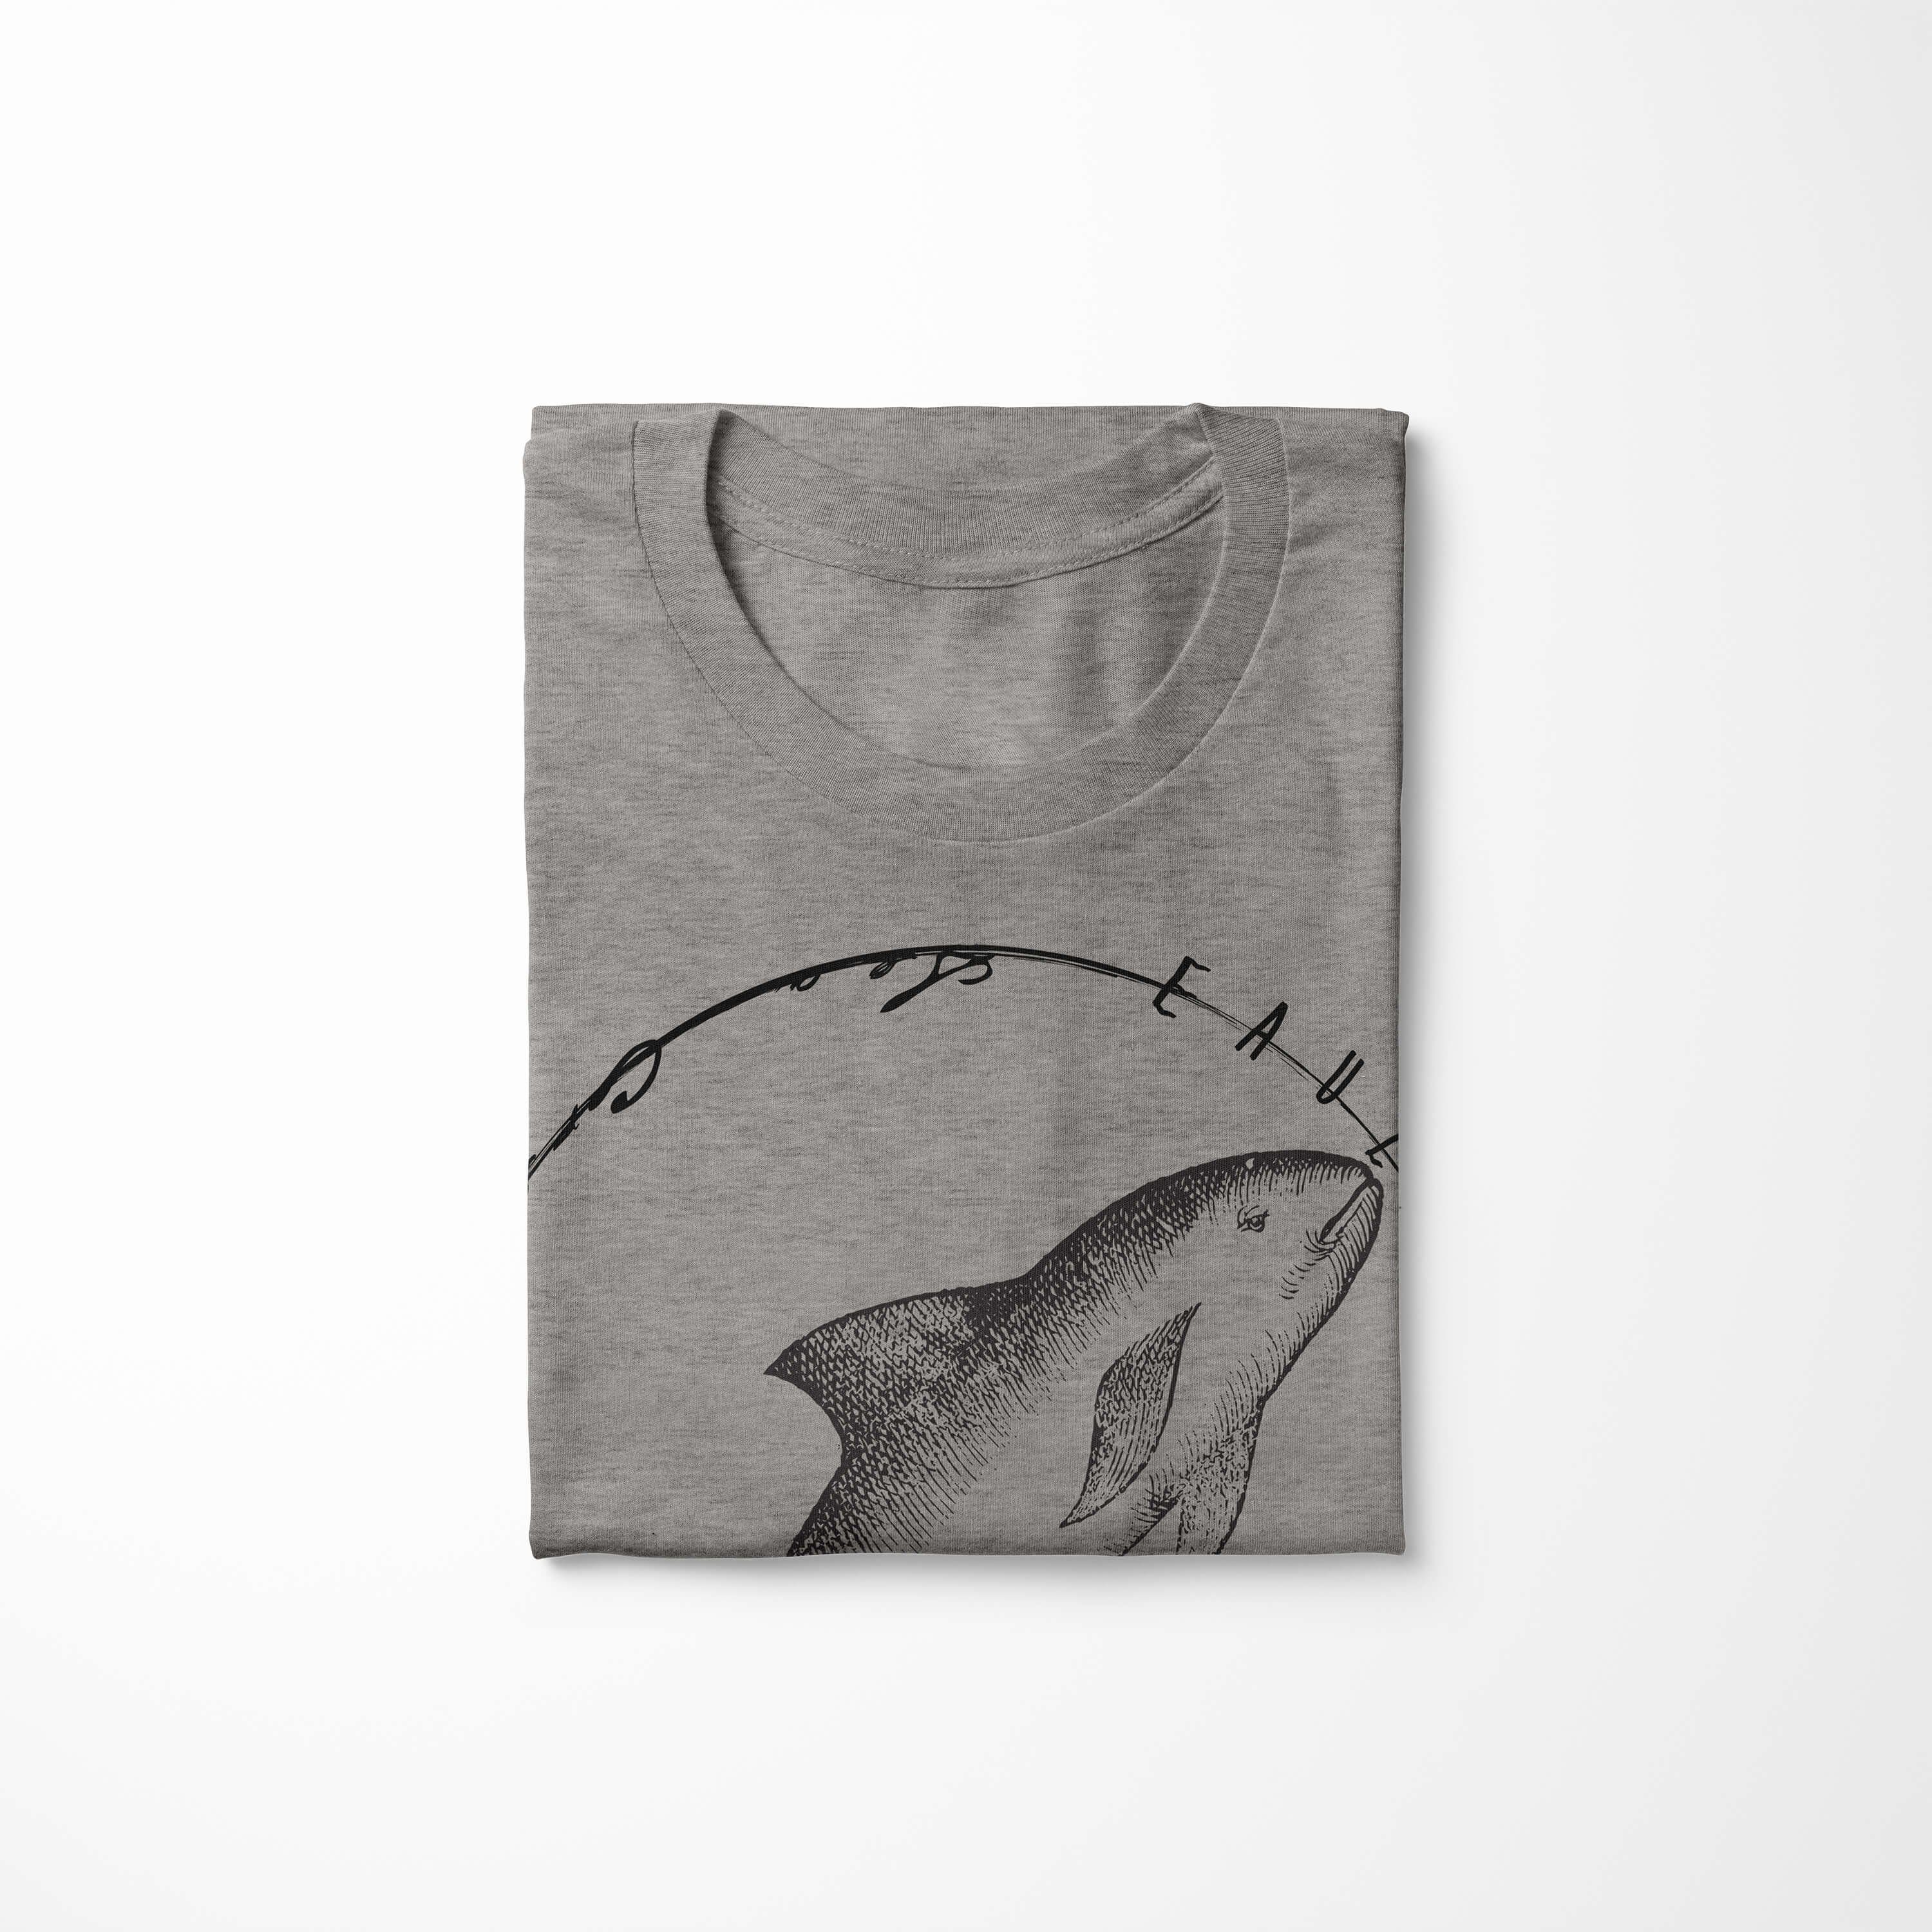 Sinus Art T-Shirt T-Shirt / Schnitt Fische Struktur Sea und Tiefsee sportlicher Ash 060 Creatures, Serie: - feine Sea